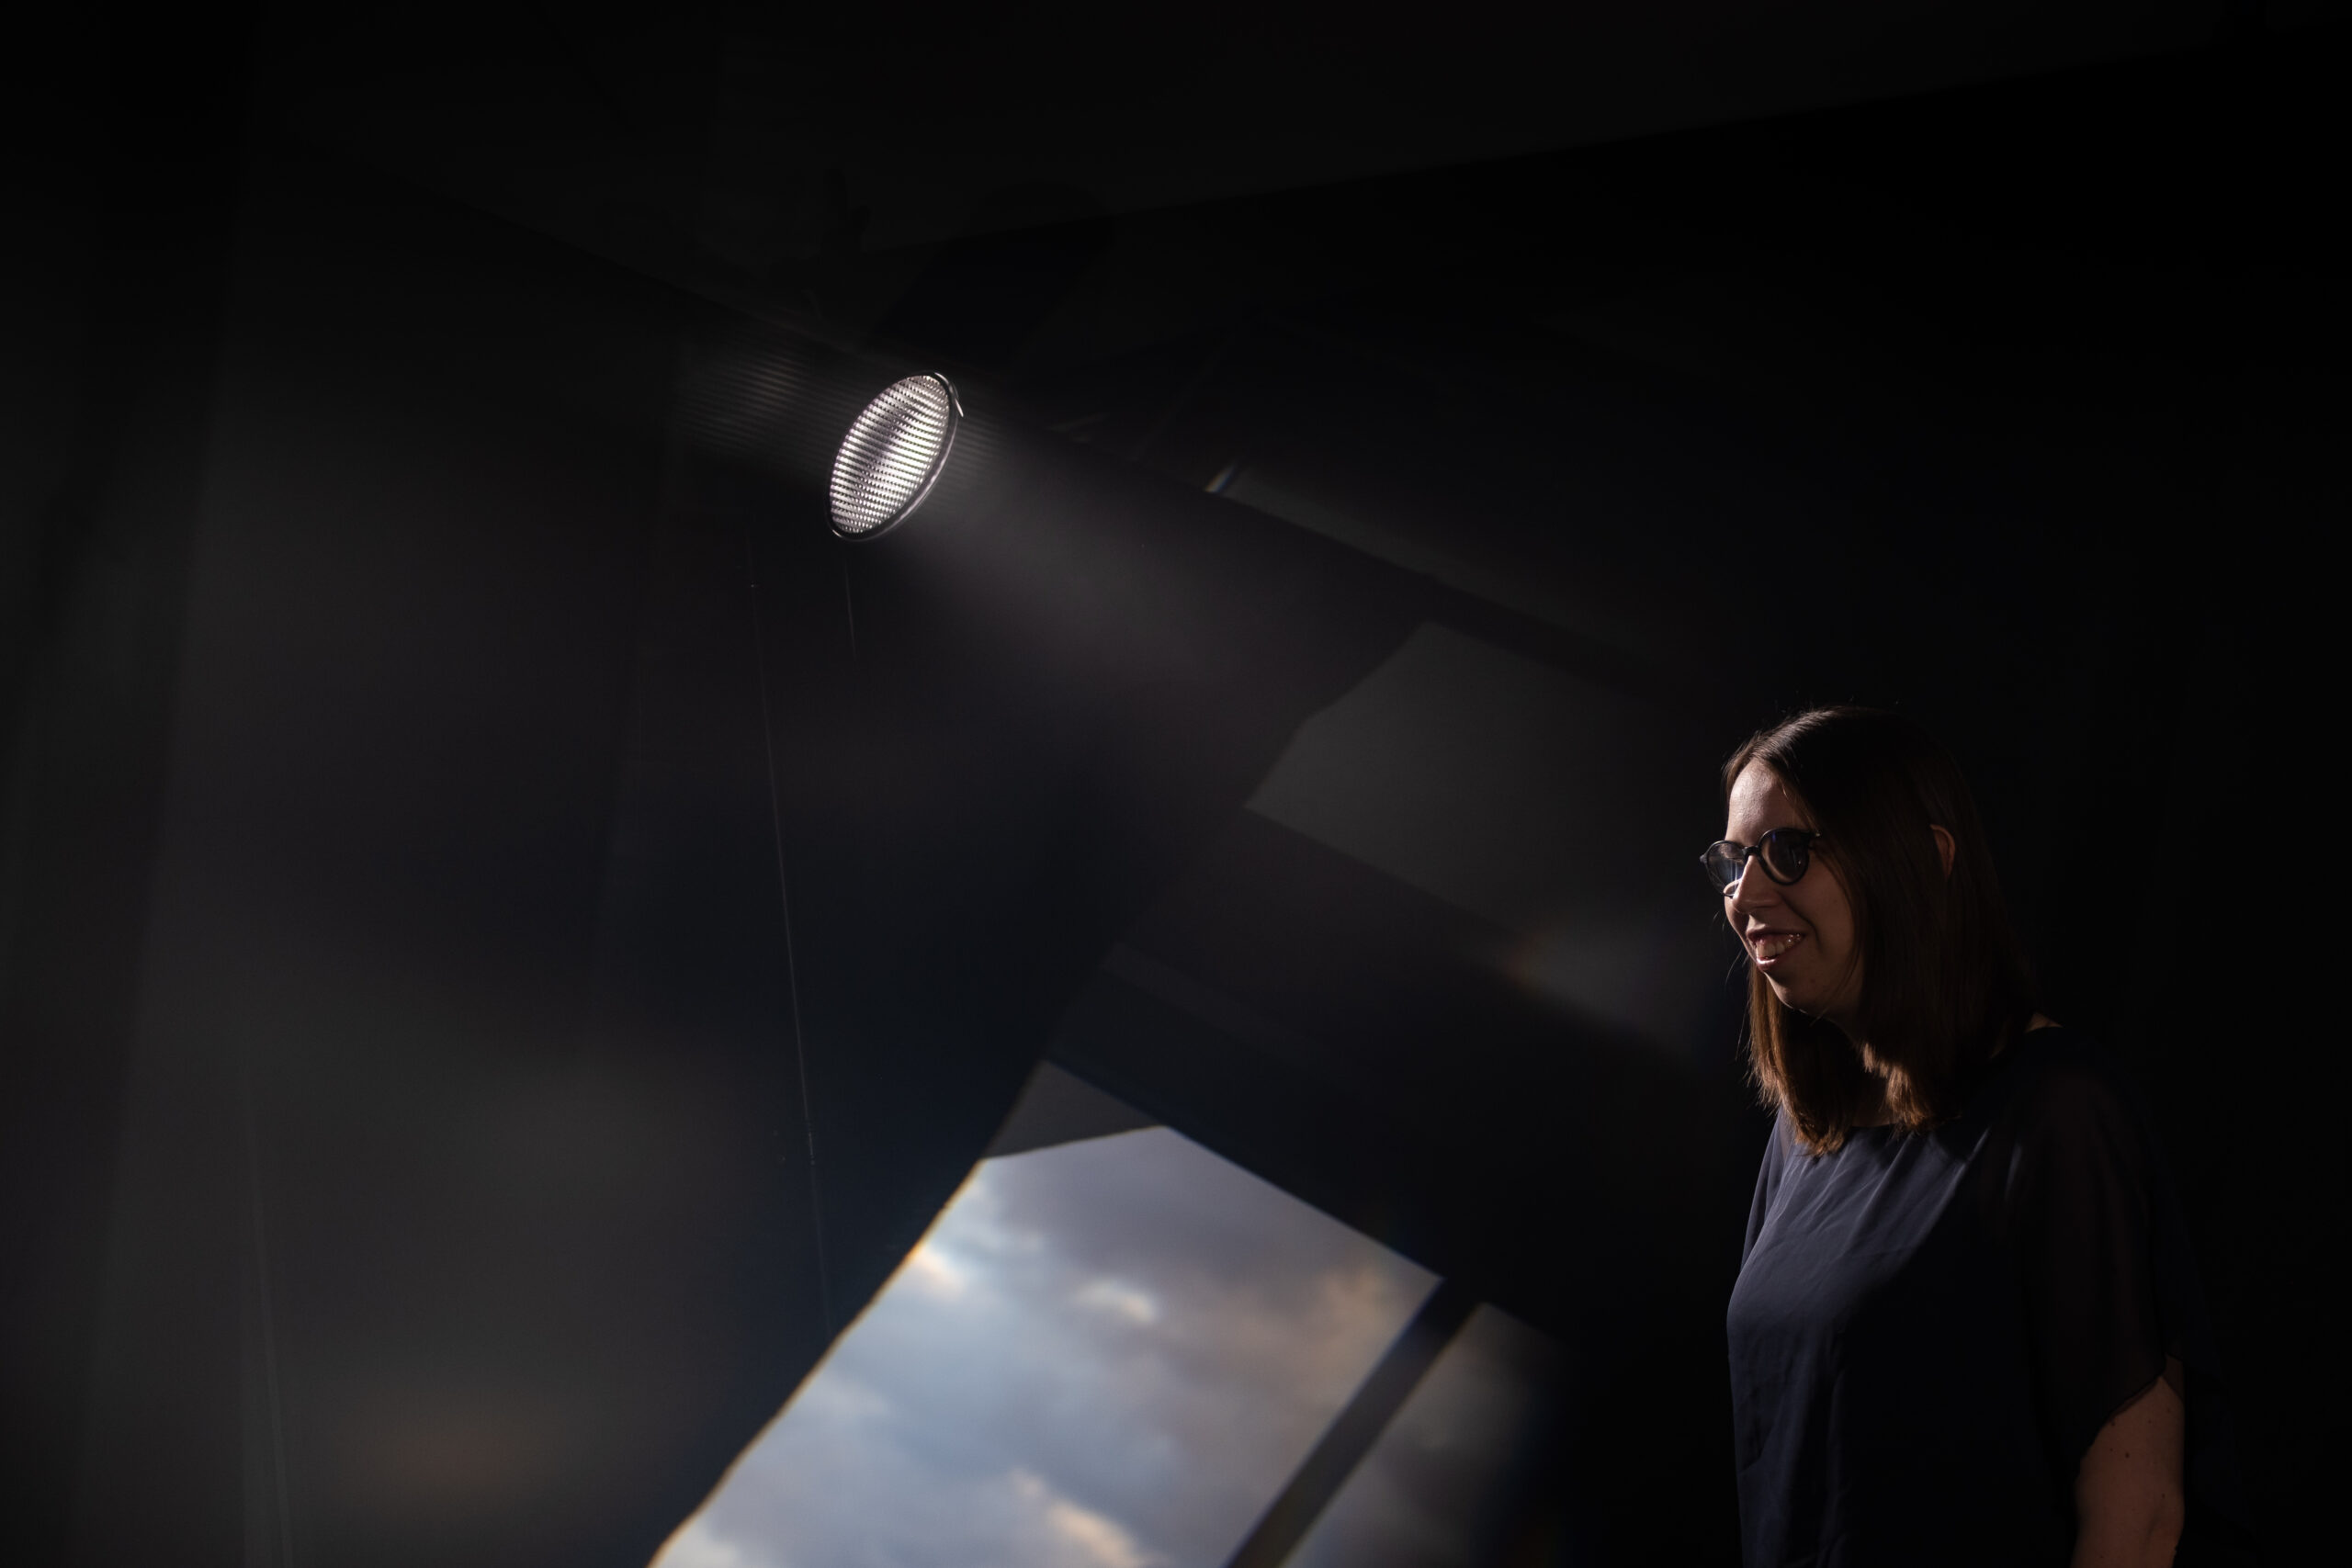 Lorena Dürnholz steht im Lichtkegel eines Bühnenscheinwerfers und lächelt – im Vordergrund sind Spiegelungen eines Wolkenhimmels zu erkennen